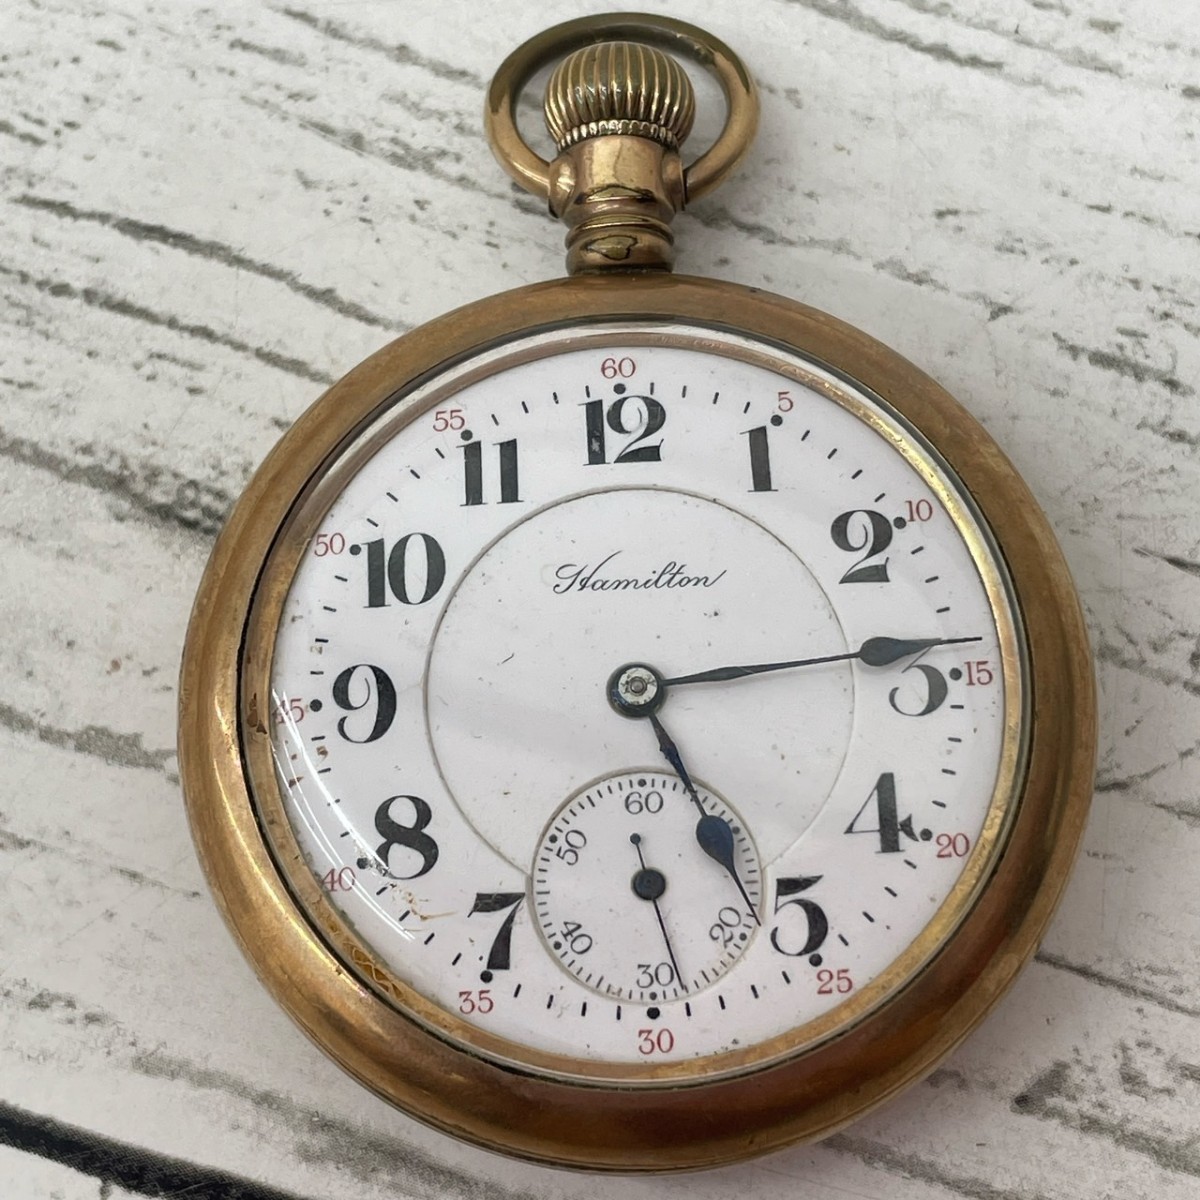  Hamilton карманные часы очень редкий 1900 годы Gold цвет античный механический завод циферблат белый работа товар часы карман часы [3015]